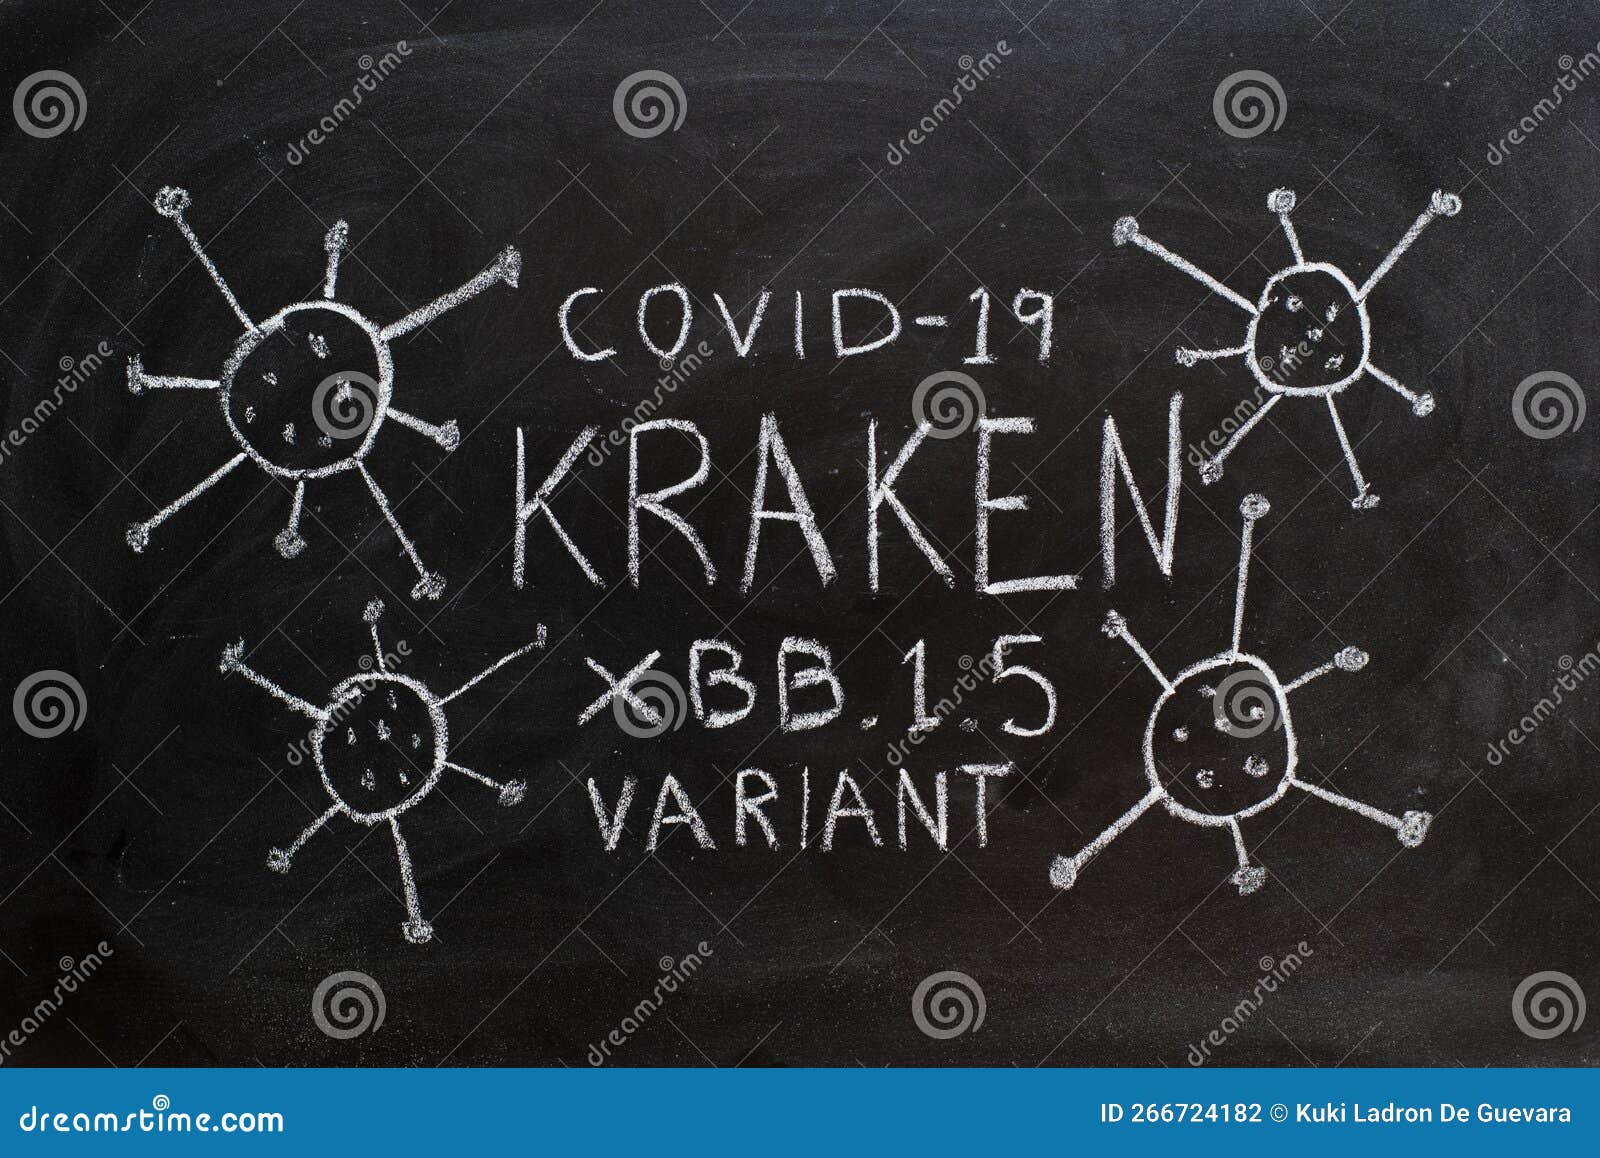 kraken, new variant of covid 19, written on a blackboard